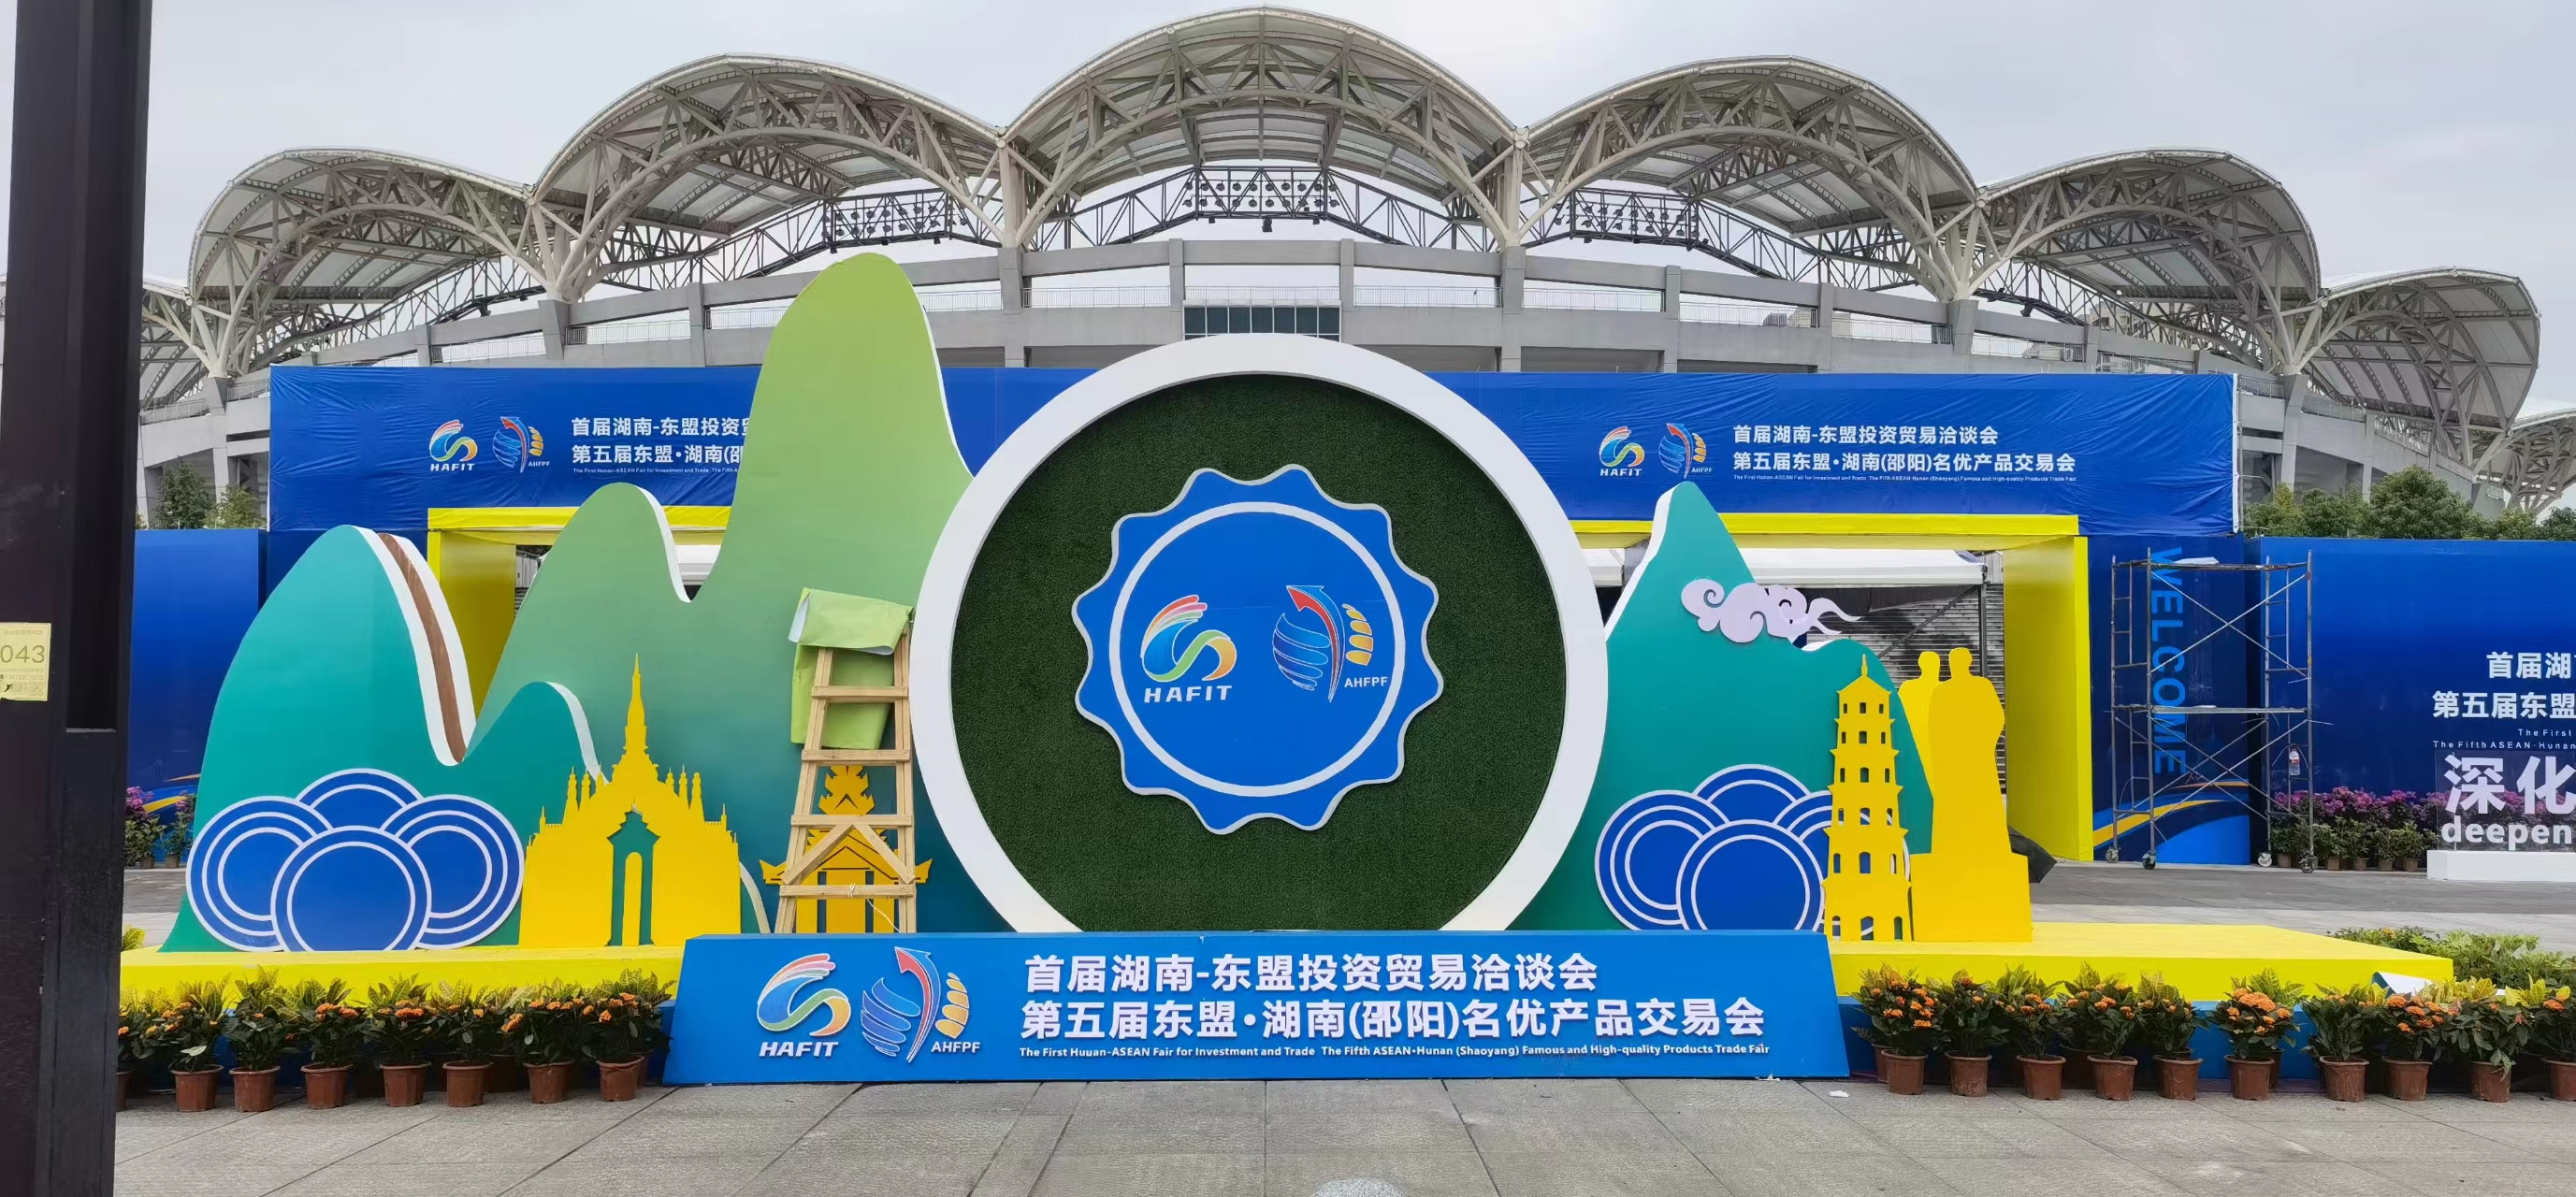 Déi éischt Hunan-ASEAN Investment and Trade Fair huet zu Shaoyang opgemaach